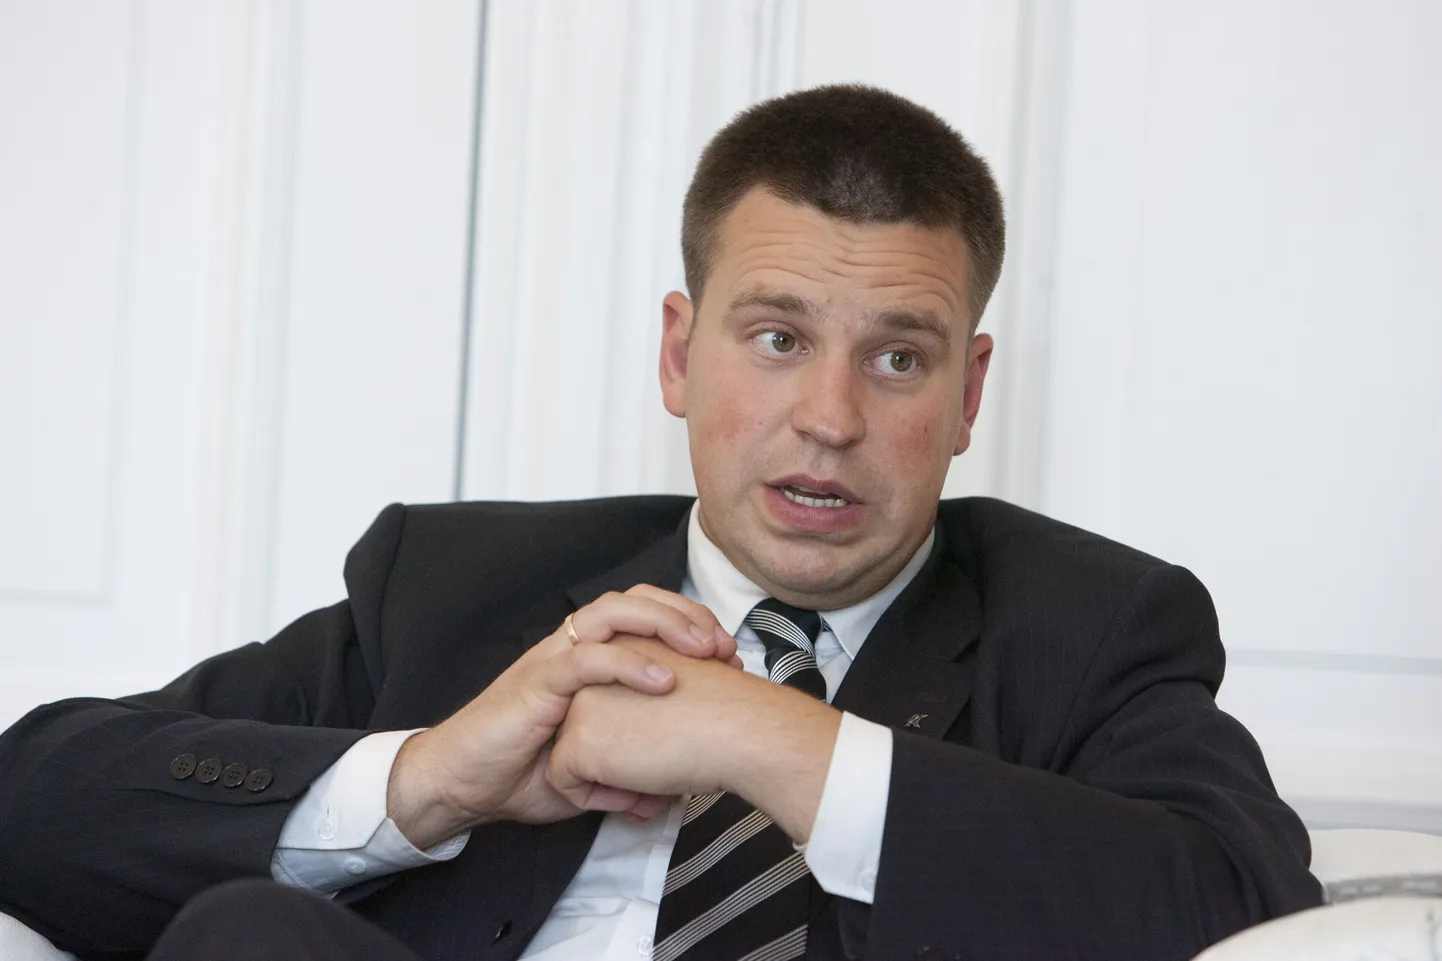 33-летний Юри Ратас успел поработать и мэром Таллинна (2005-2007), и вице-спикером парламента (с апреля 2007-го), но останавливаться на этом не намерен.